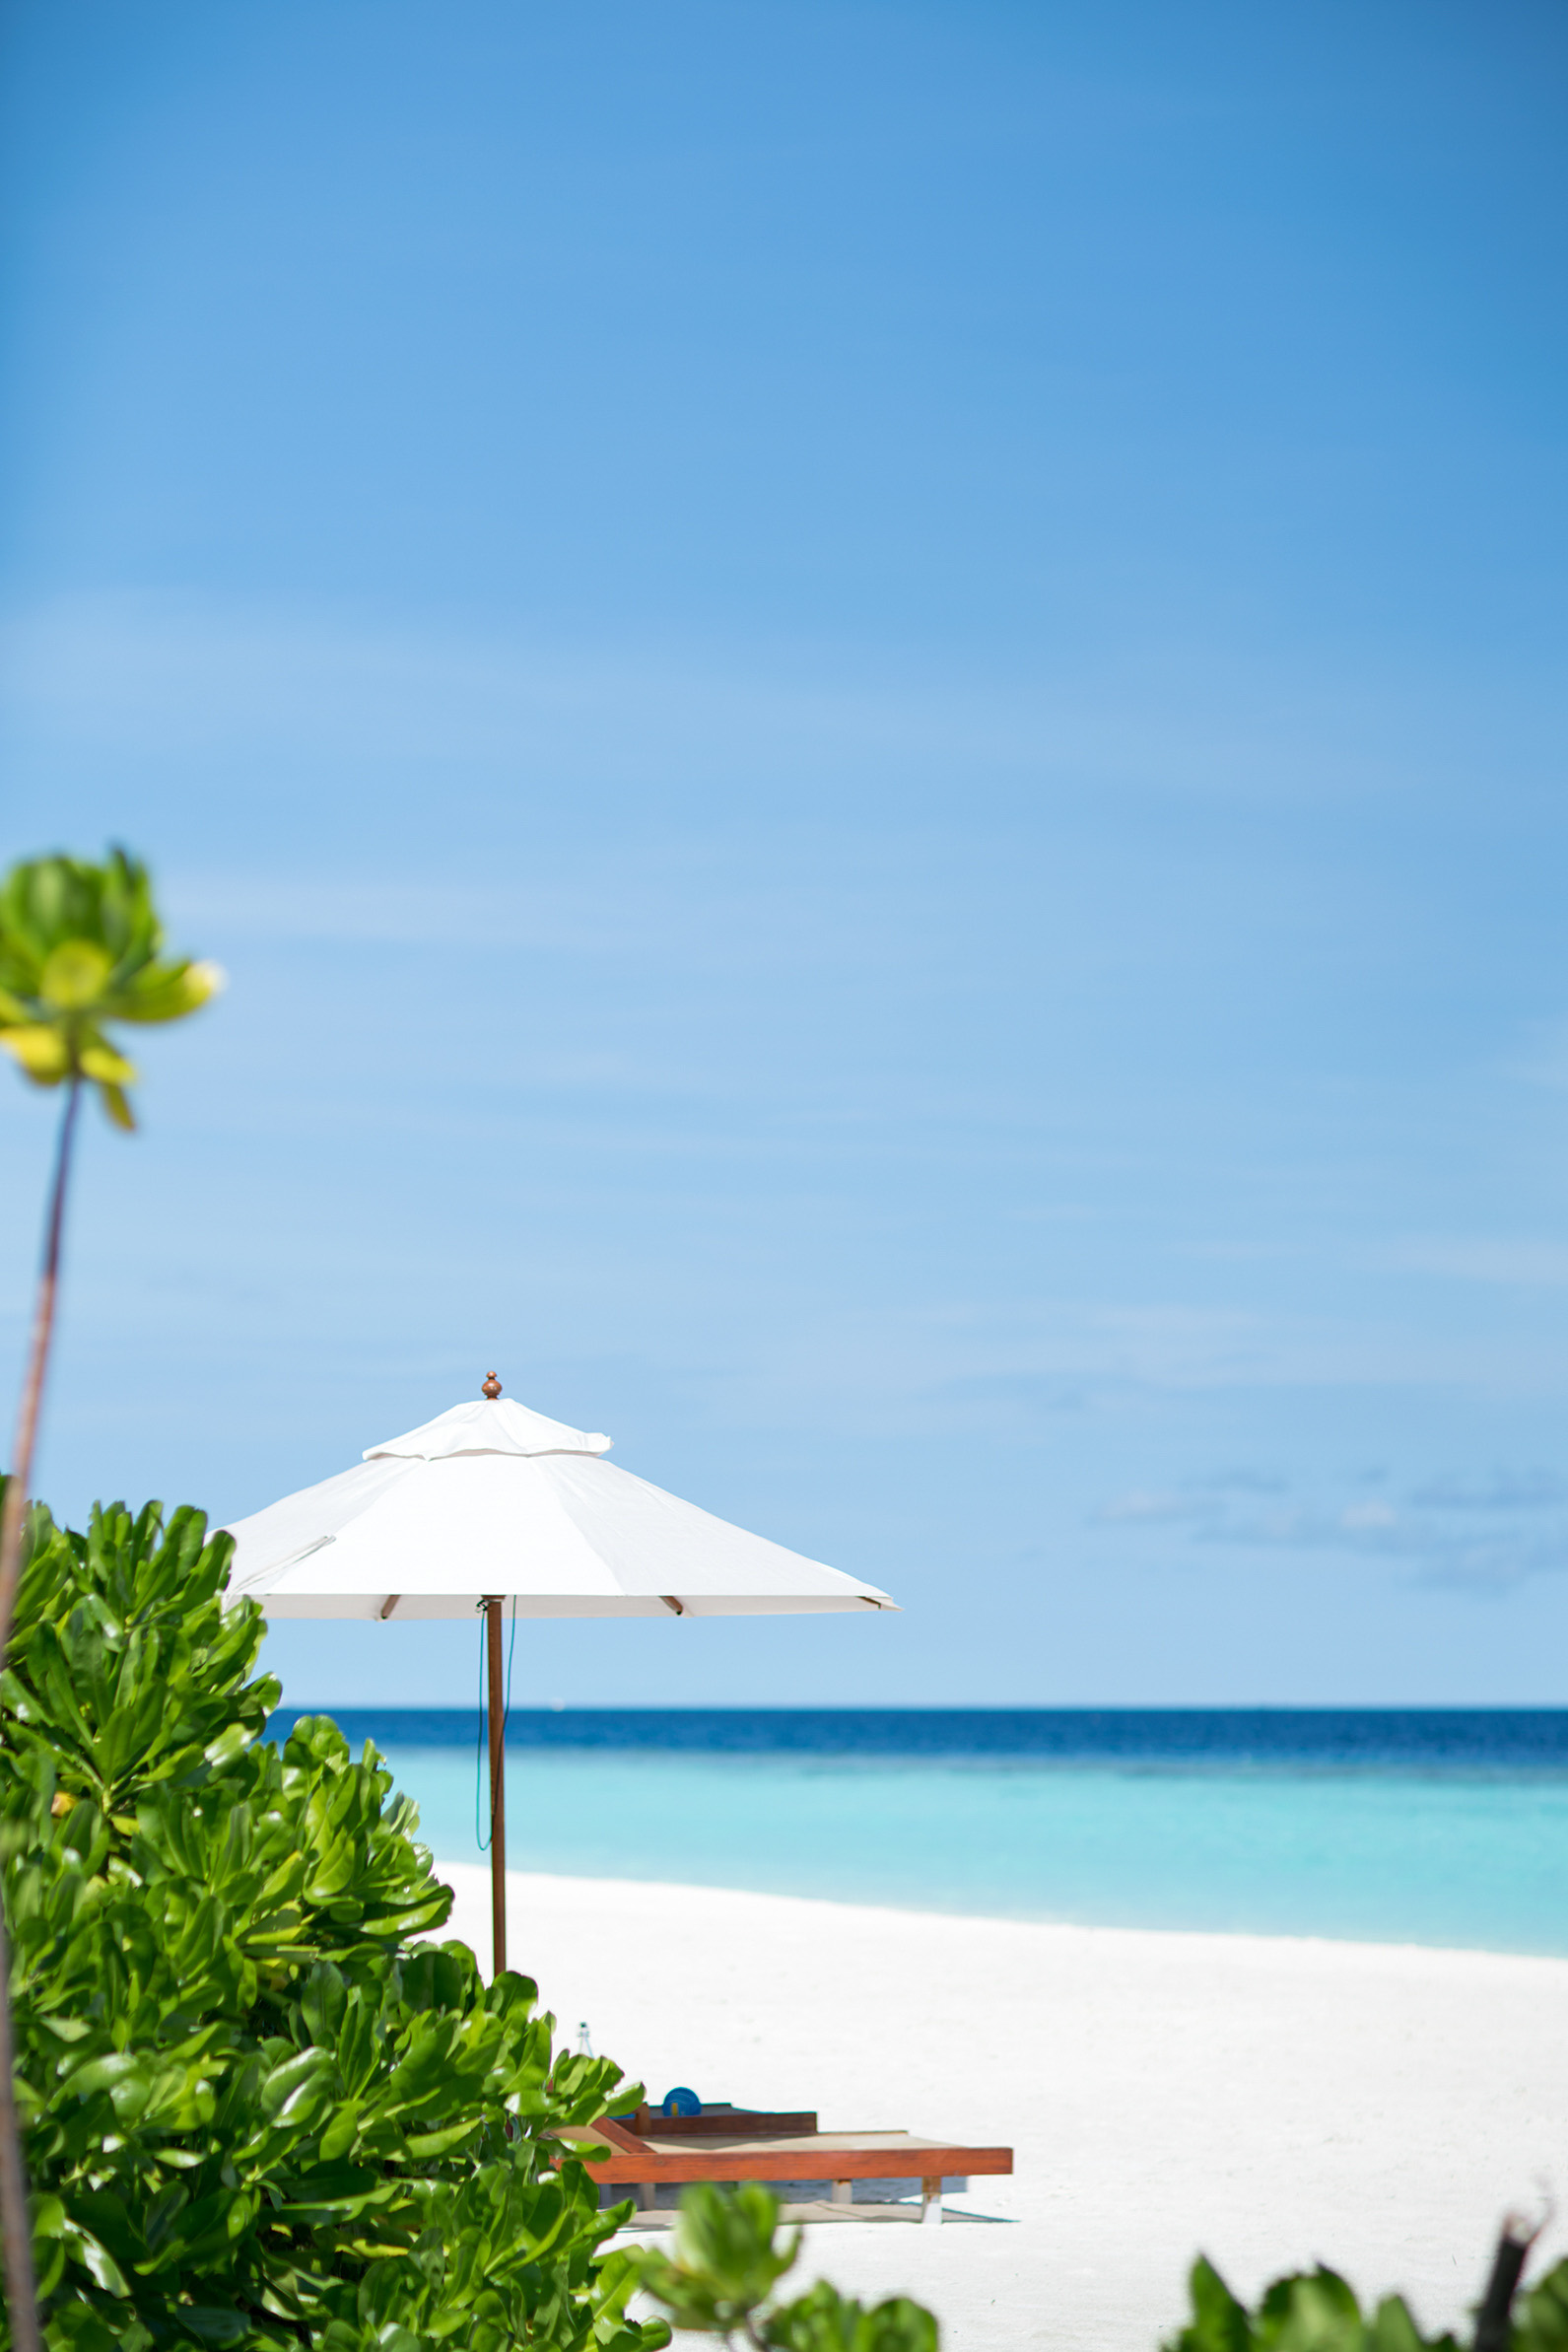 Anantara Kihavah Maldives Villas Resort – Baa Atoll, Maldives – Private Beach Ocean View